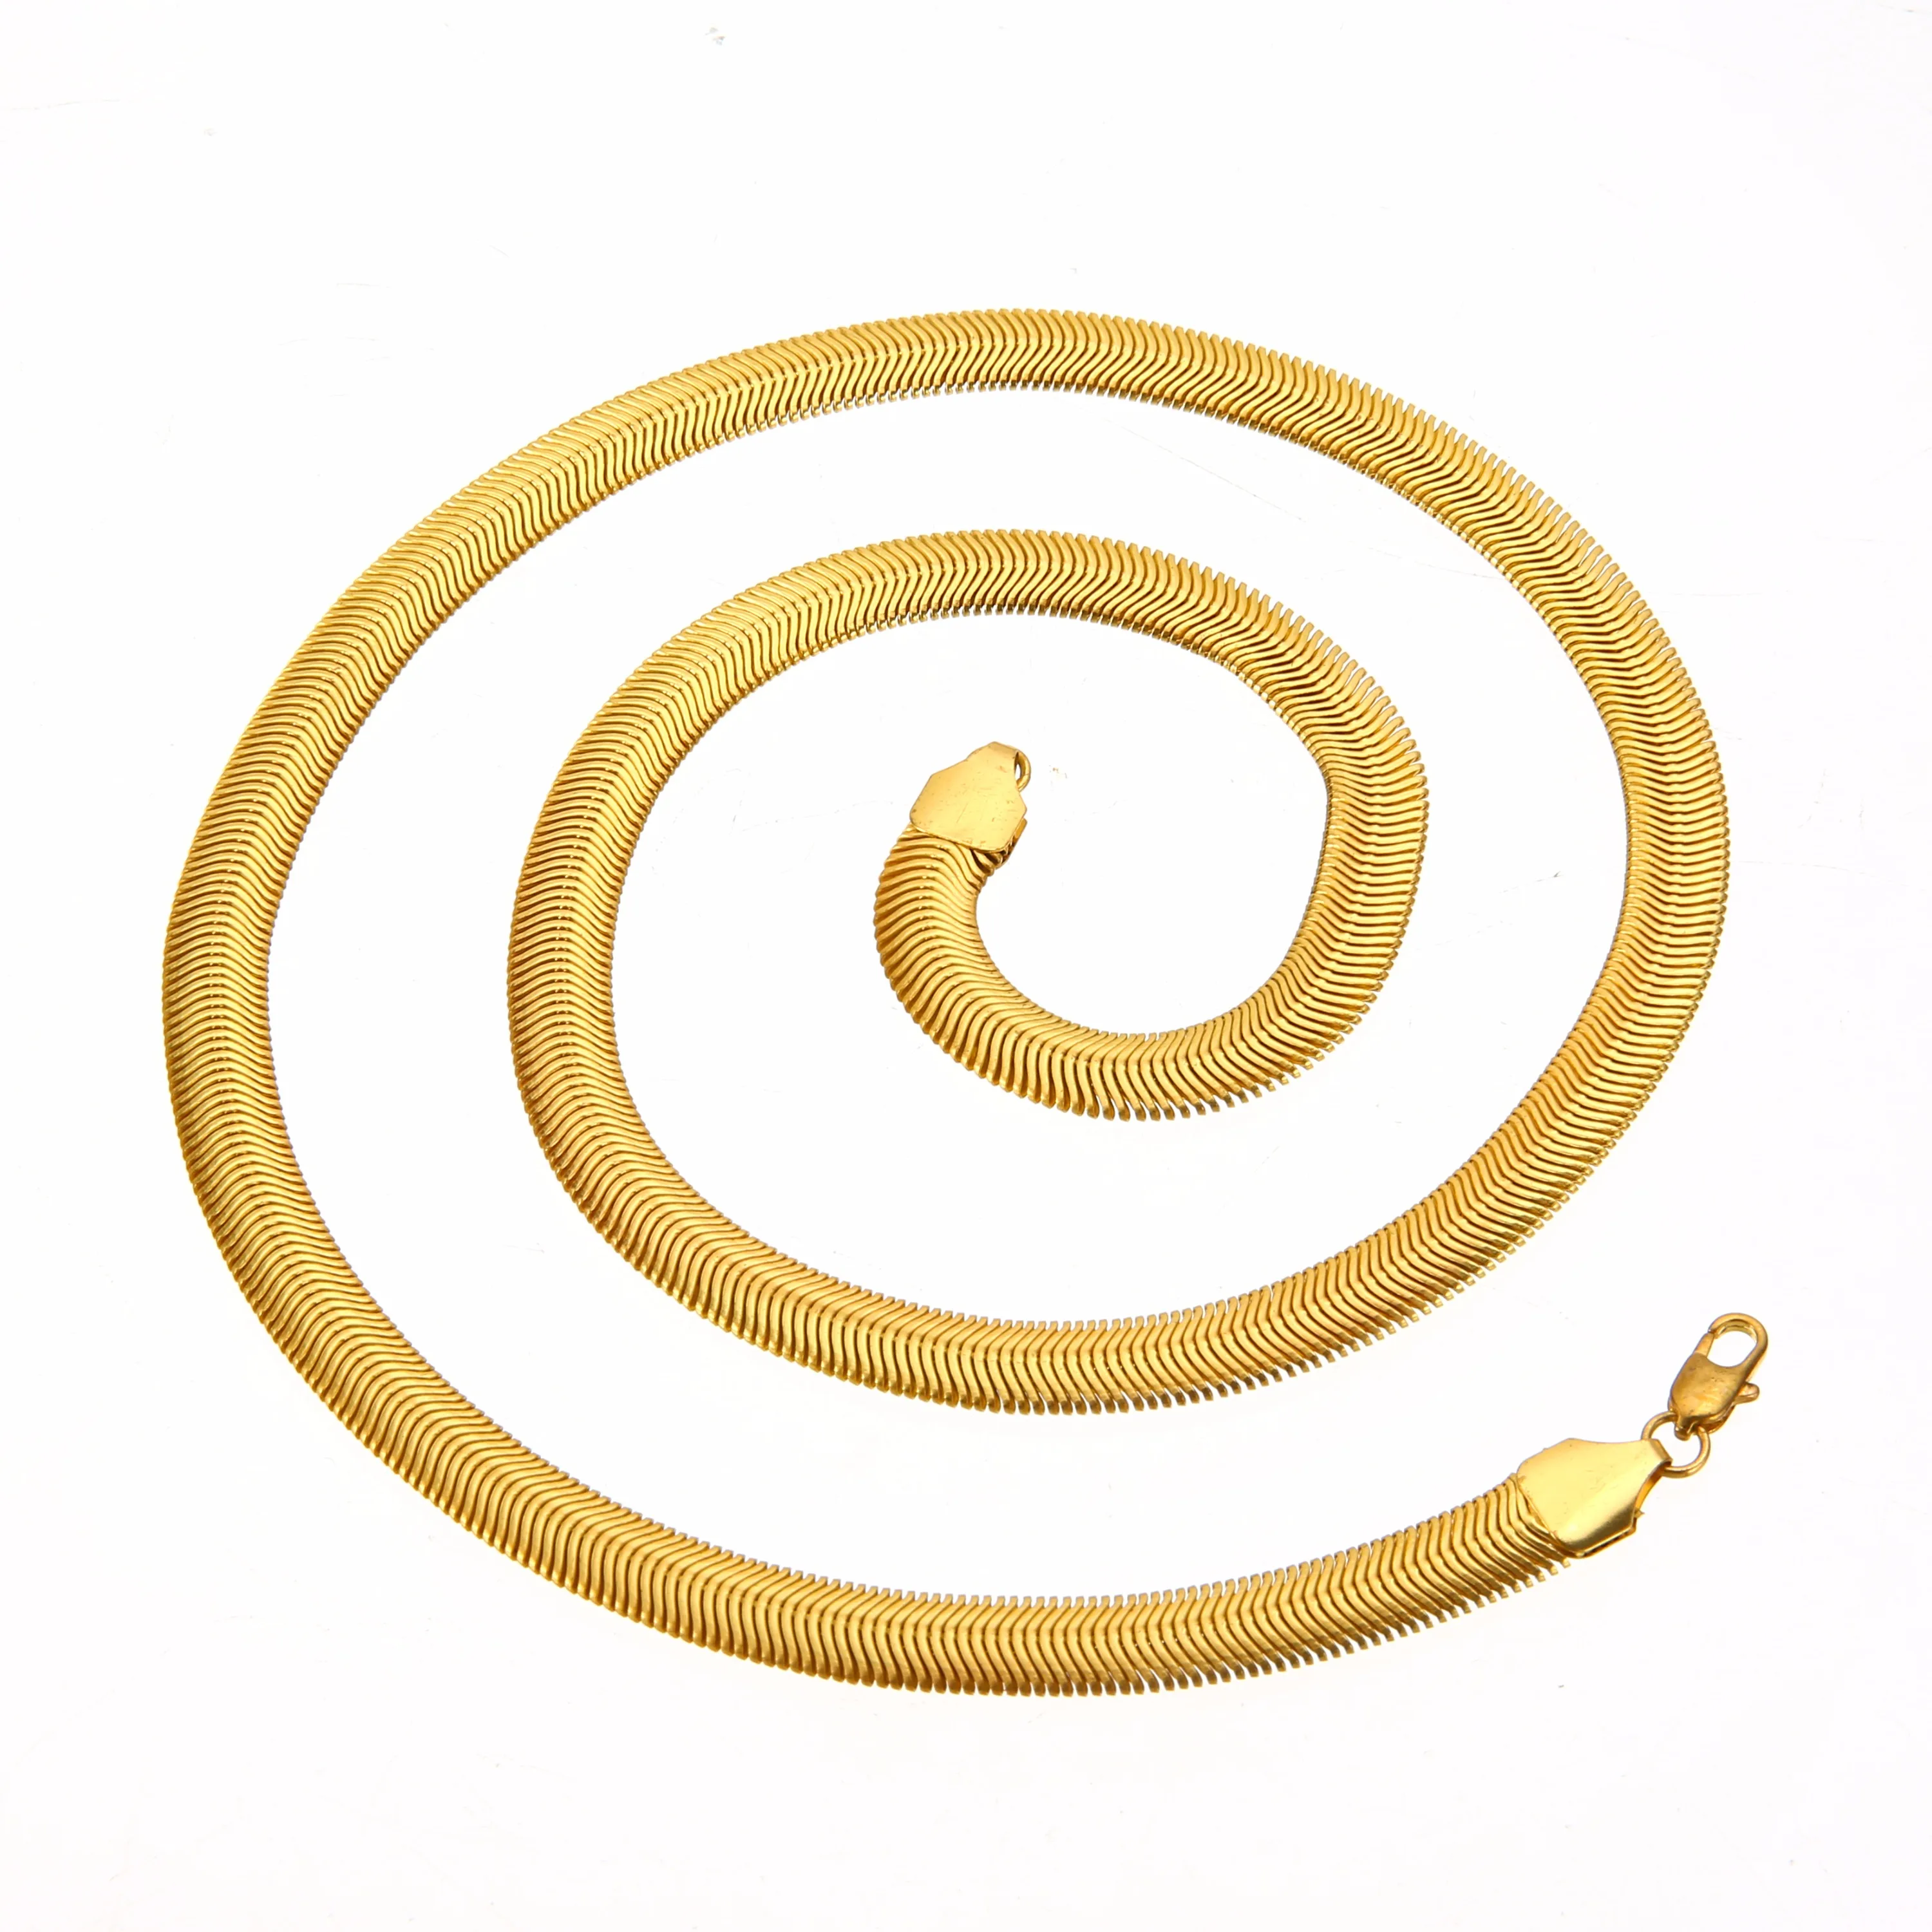 Хип-хоп 8 мм змея цепочка в форме кости золотого цвета Снаряженная кубинская цепь ожерелье s для мужчин персонализированное панк-рок ожерелье ювелирные изделия 60 см